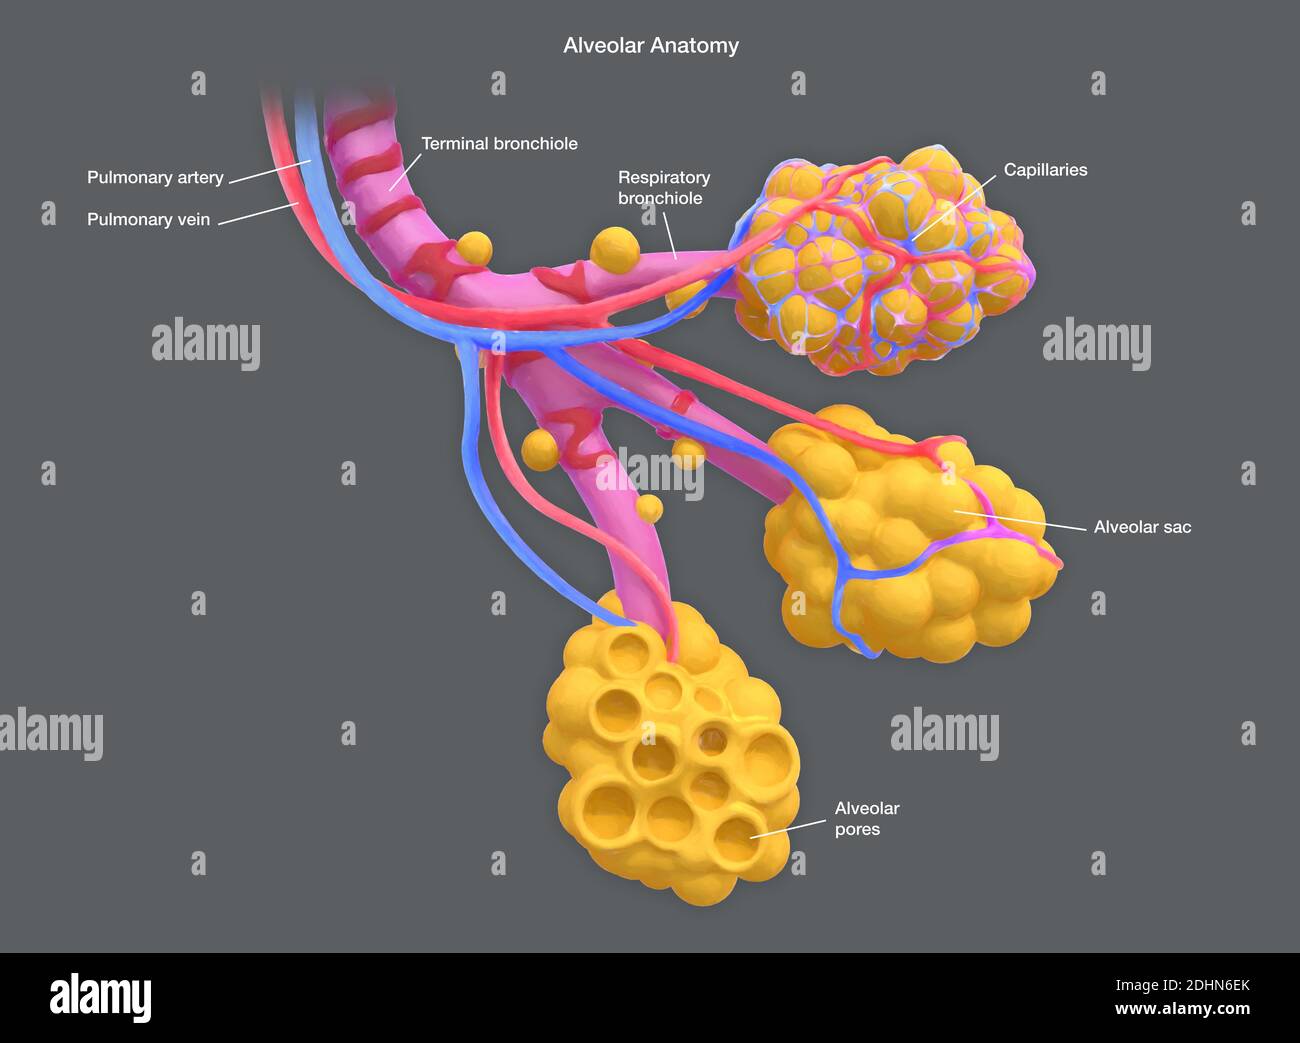 Illustrazione annotata di alveoli umani. Gli alveoli sono sacche d'aria nei polmoni, alle estremità dei bronchioli, che consentono lo scambio di diox di carbonio Foto Stock